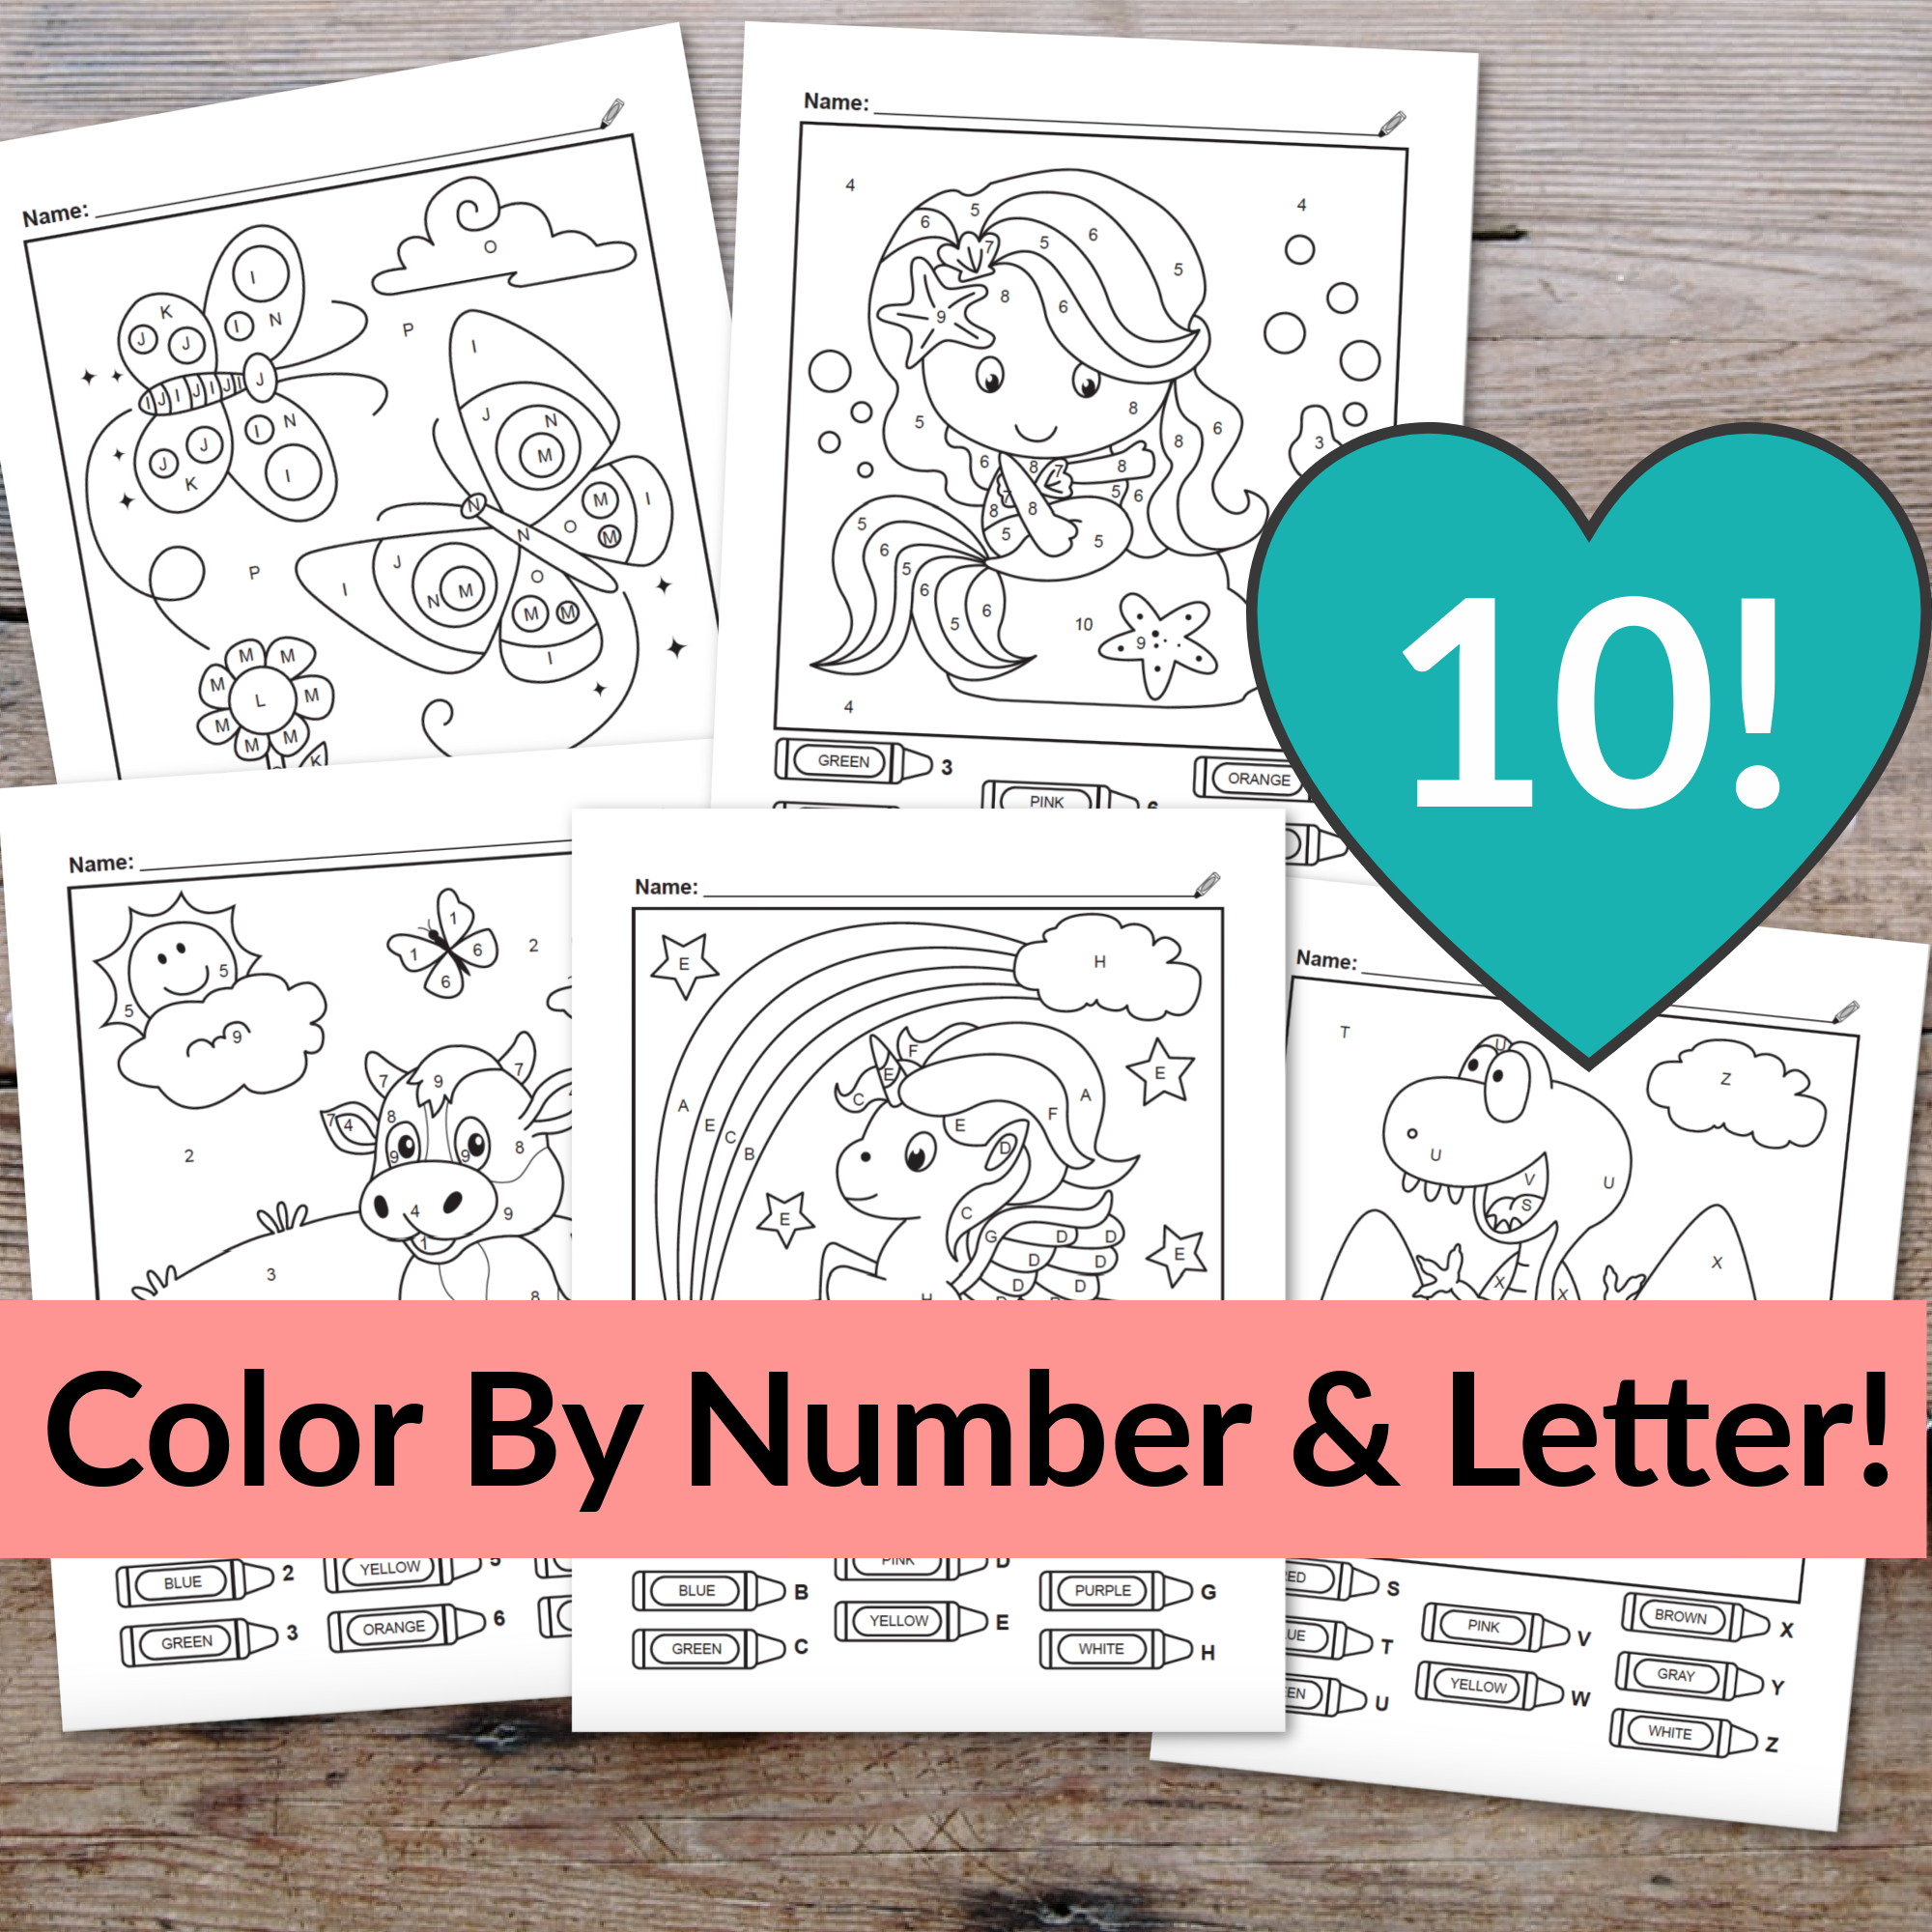 10 Color By Number & Letter Worksheets